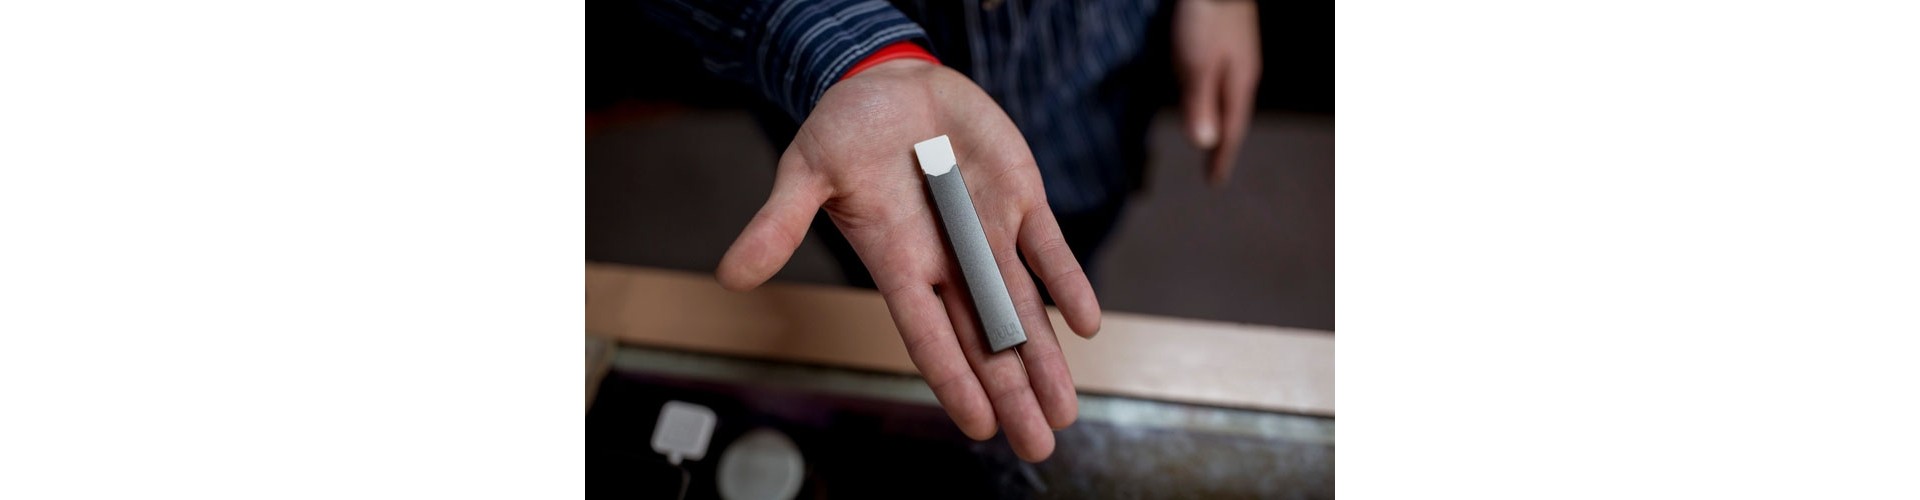 Что вам стоит знать о электронных сигаретах?